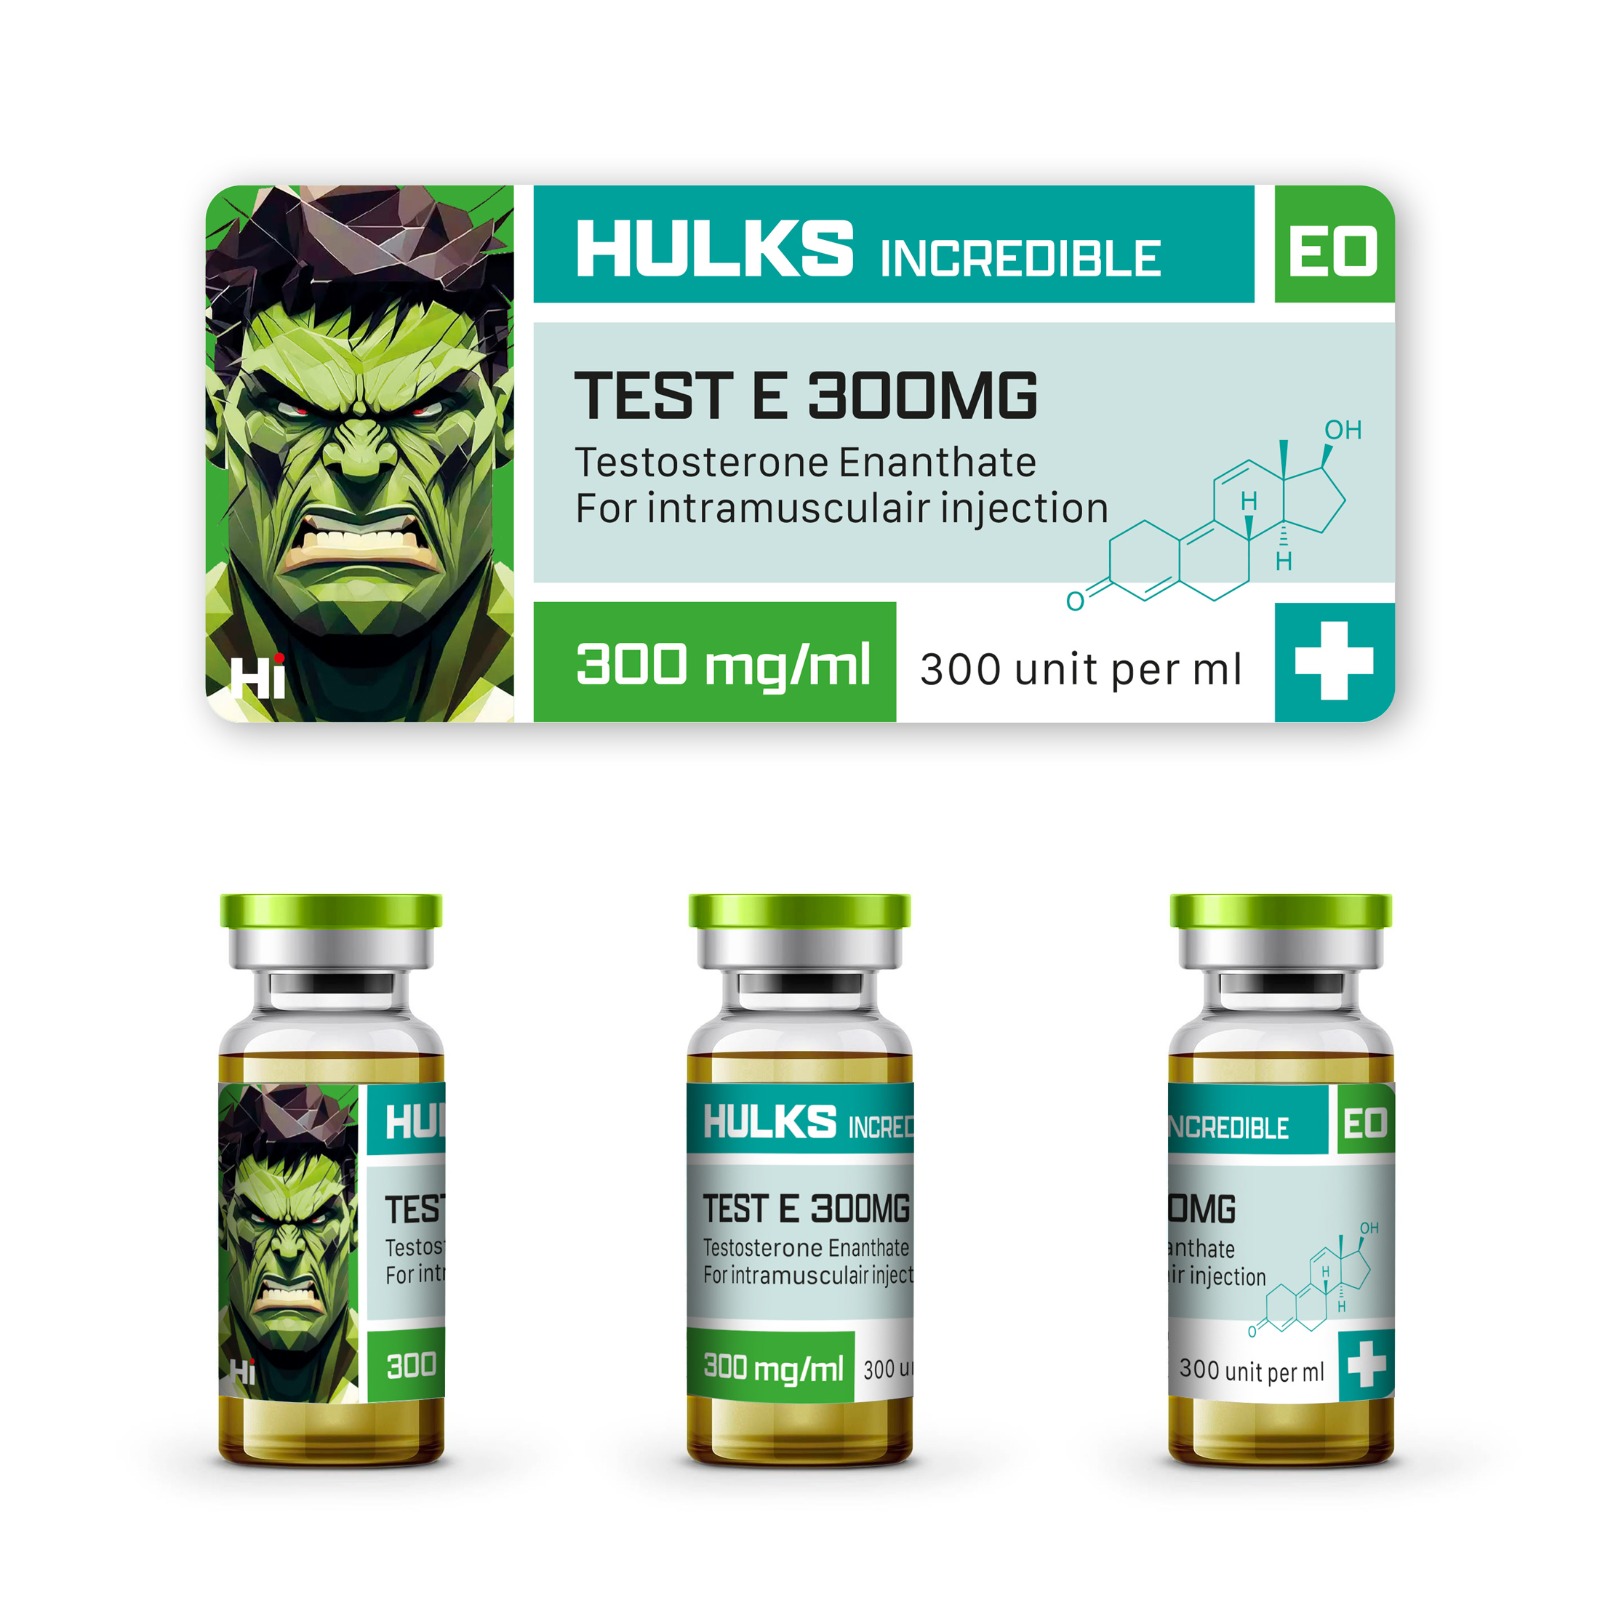 Hulks Incredible Test E 300mg